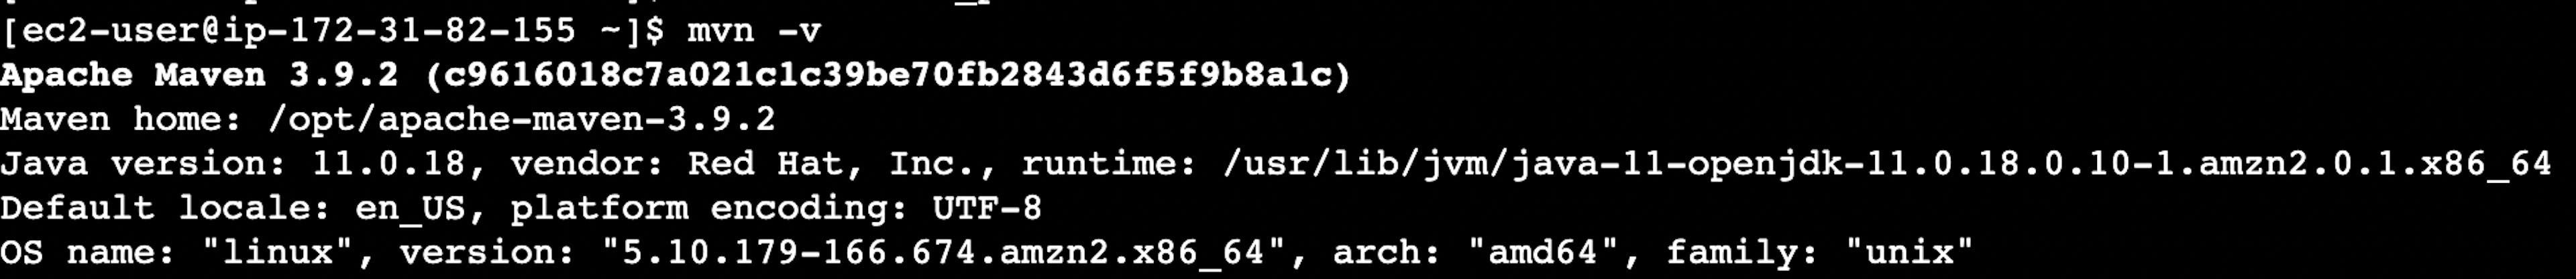 La captura de pantalla de la página web del terminal de la instancia del servidor virtual AWS EC2 con la versión de Apache Maven